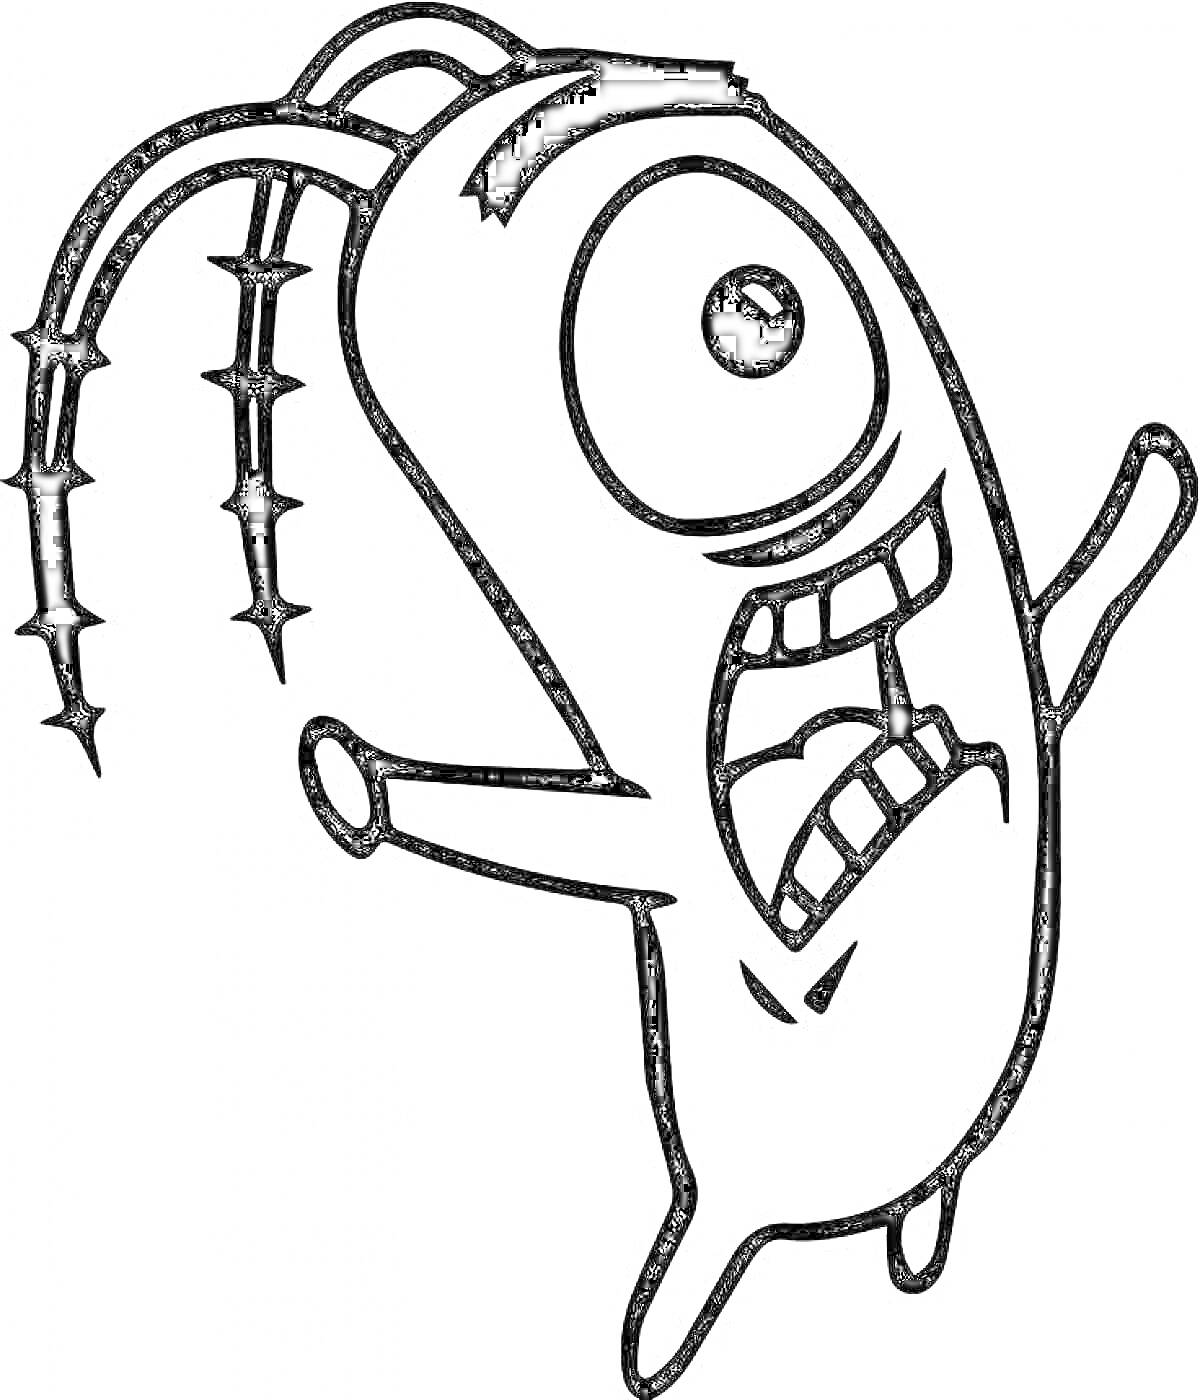 мультяшный планктон с одним глазом и антеннами, открытый рот с зубами